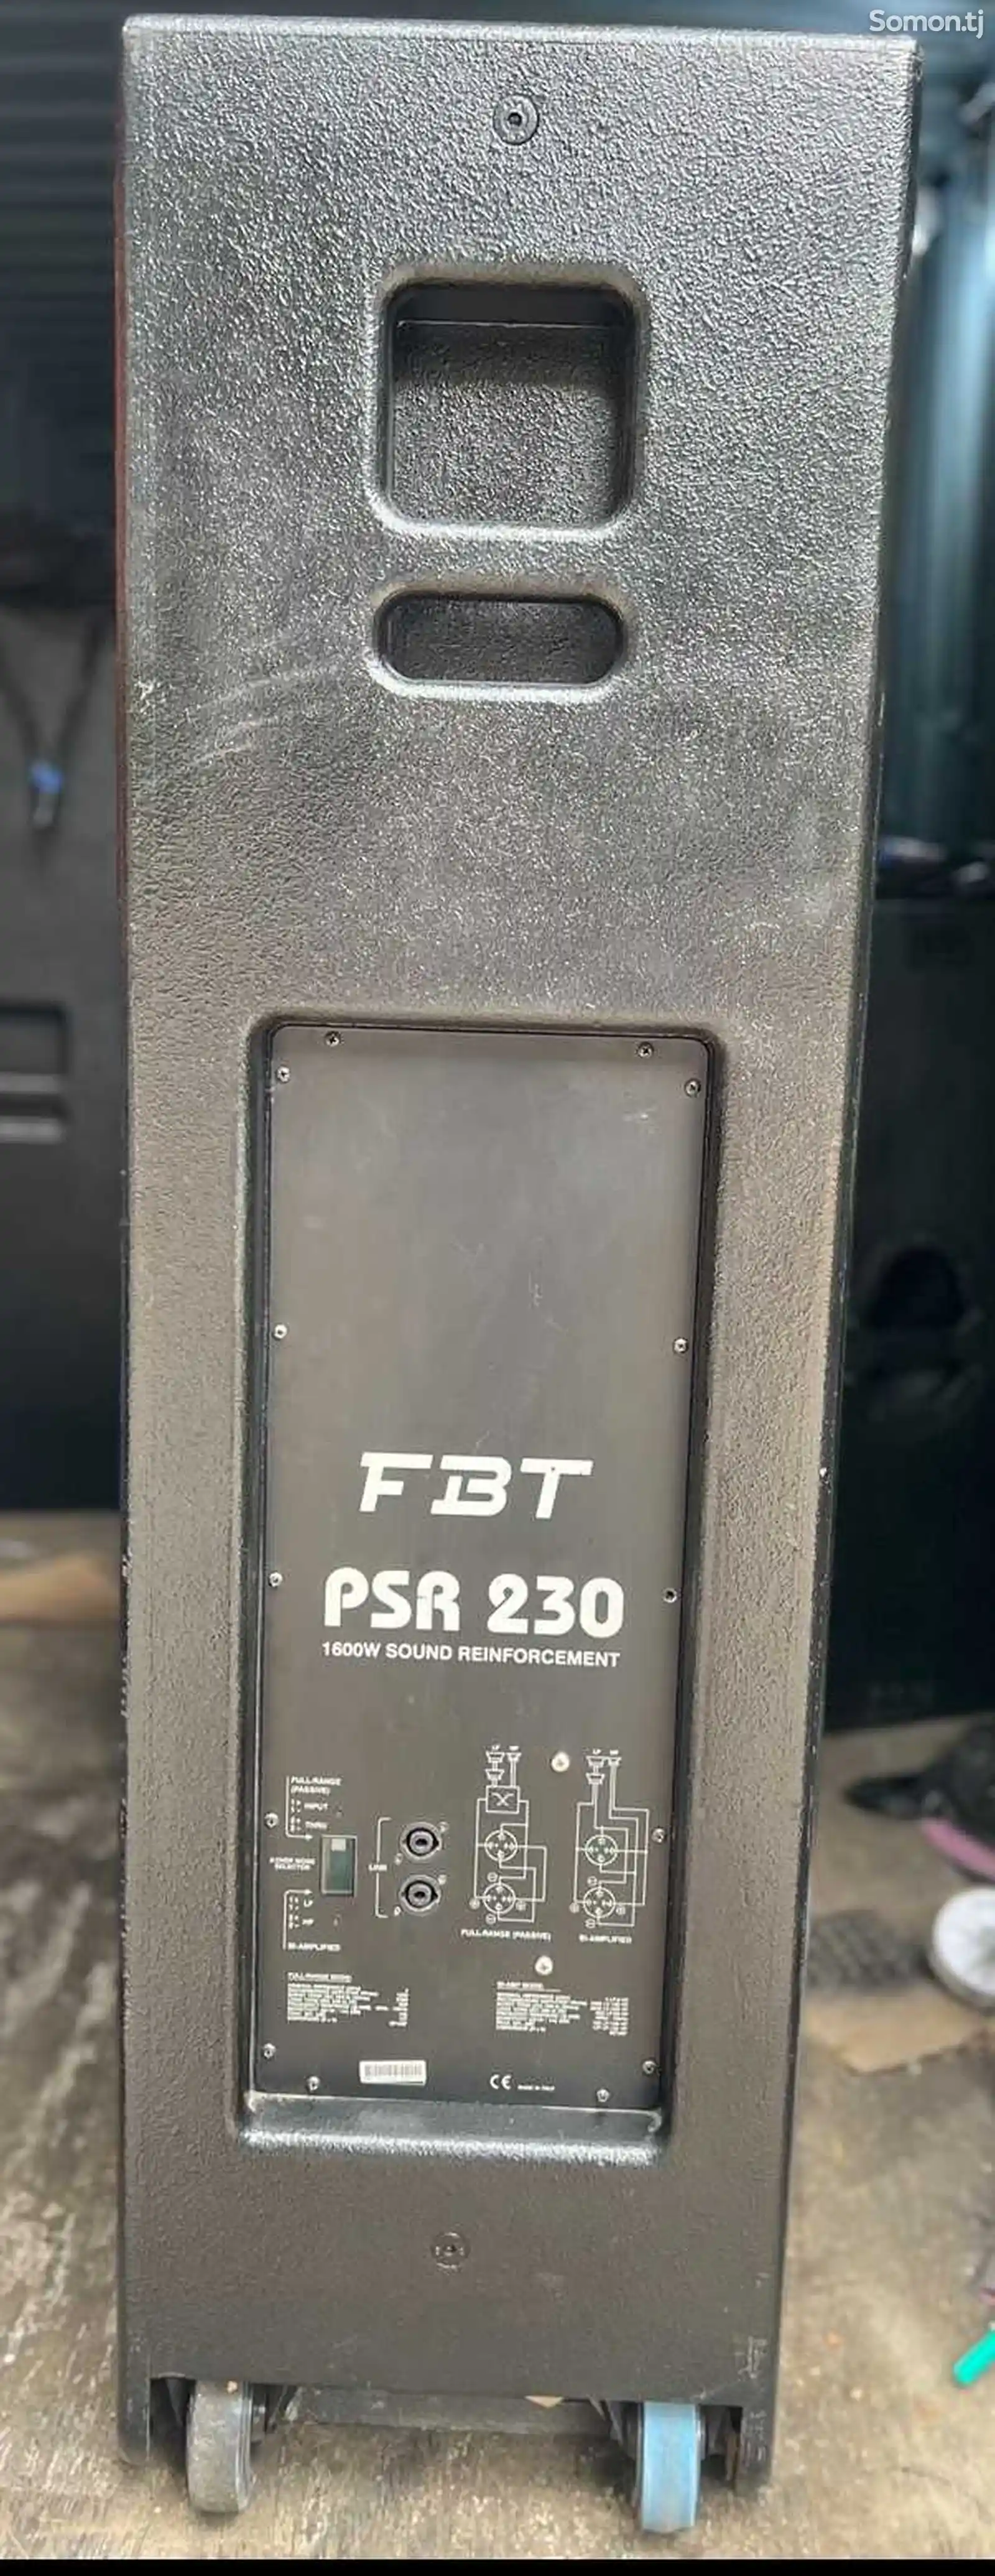 Колонка FBT PSR 230. 1600 vat rms b/y-1